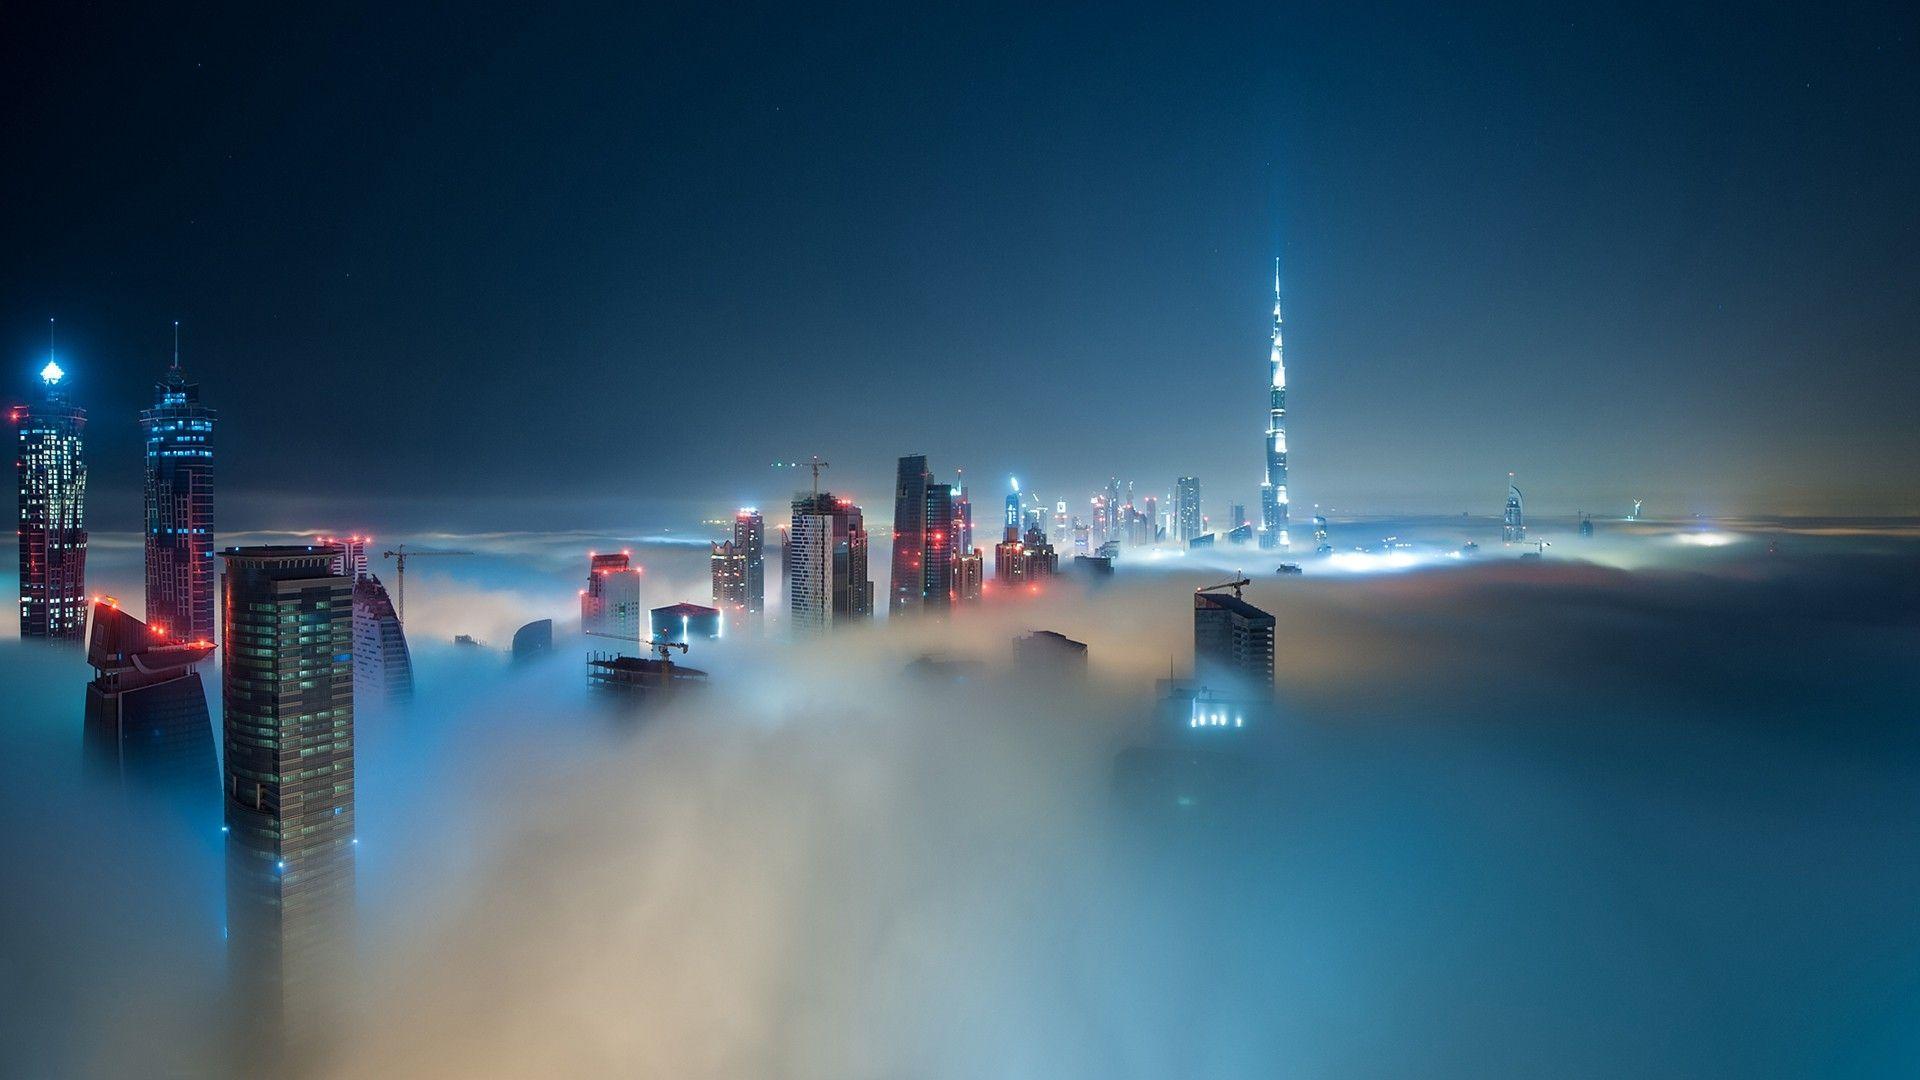 Mysterious landscape metropolis in the fog HD Desktop Wallpaper. HD